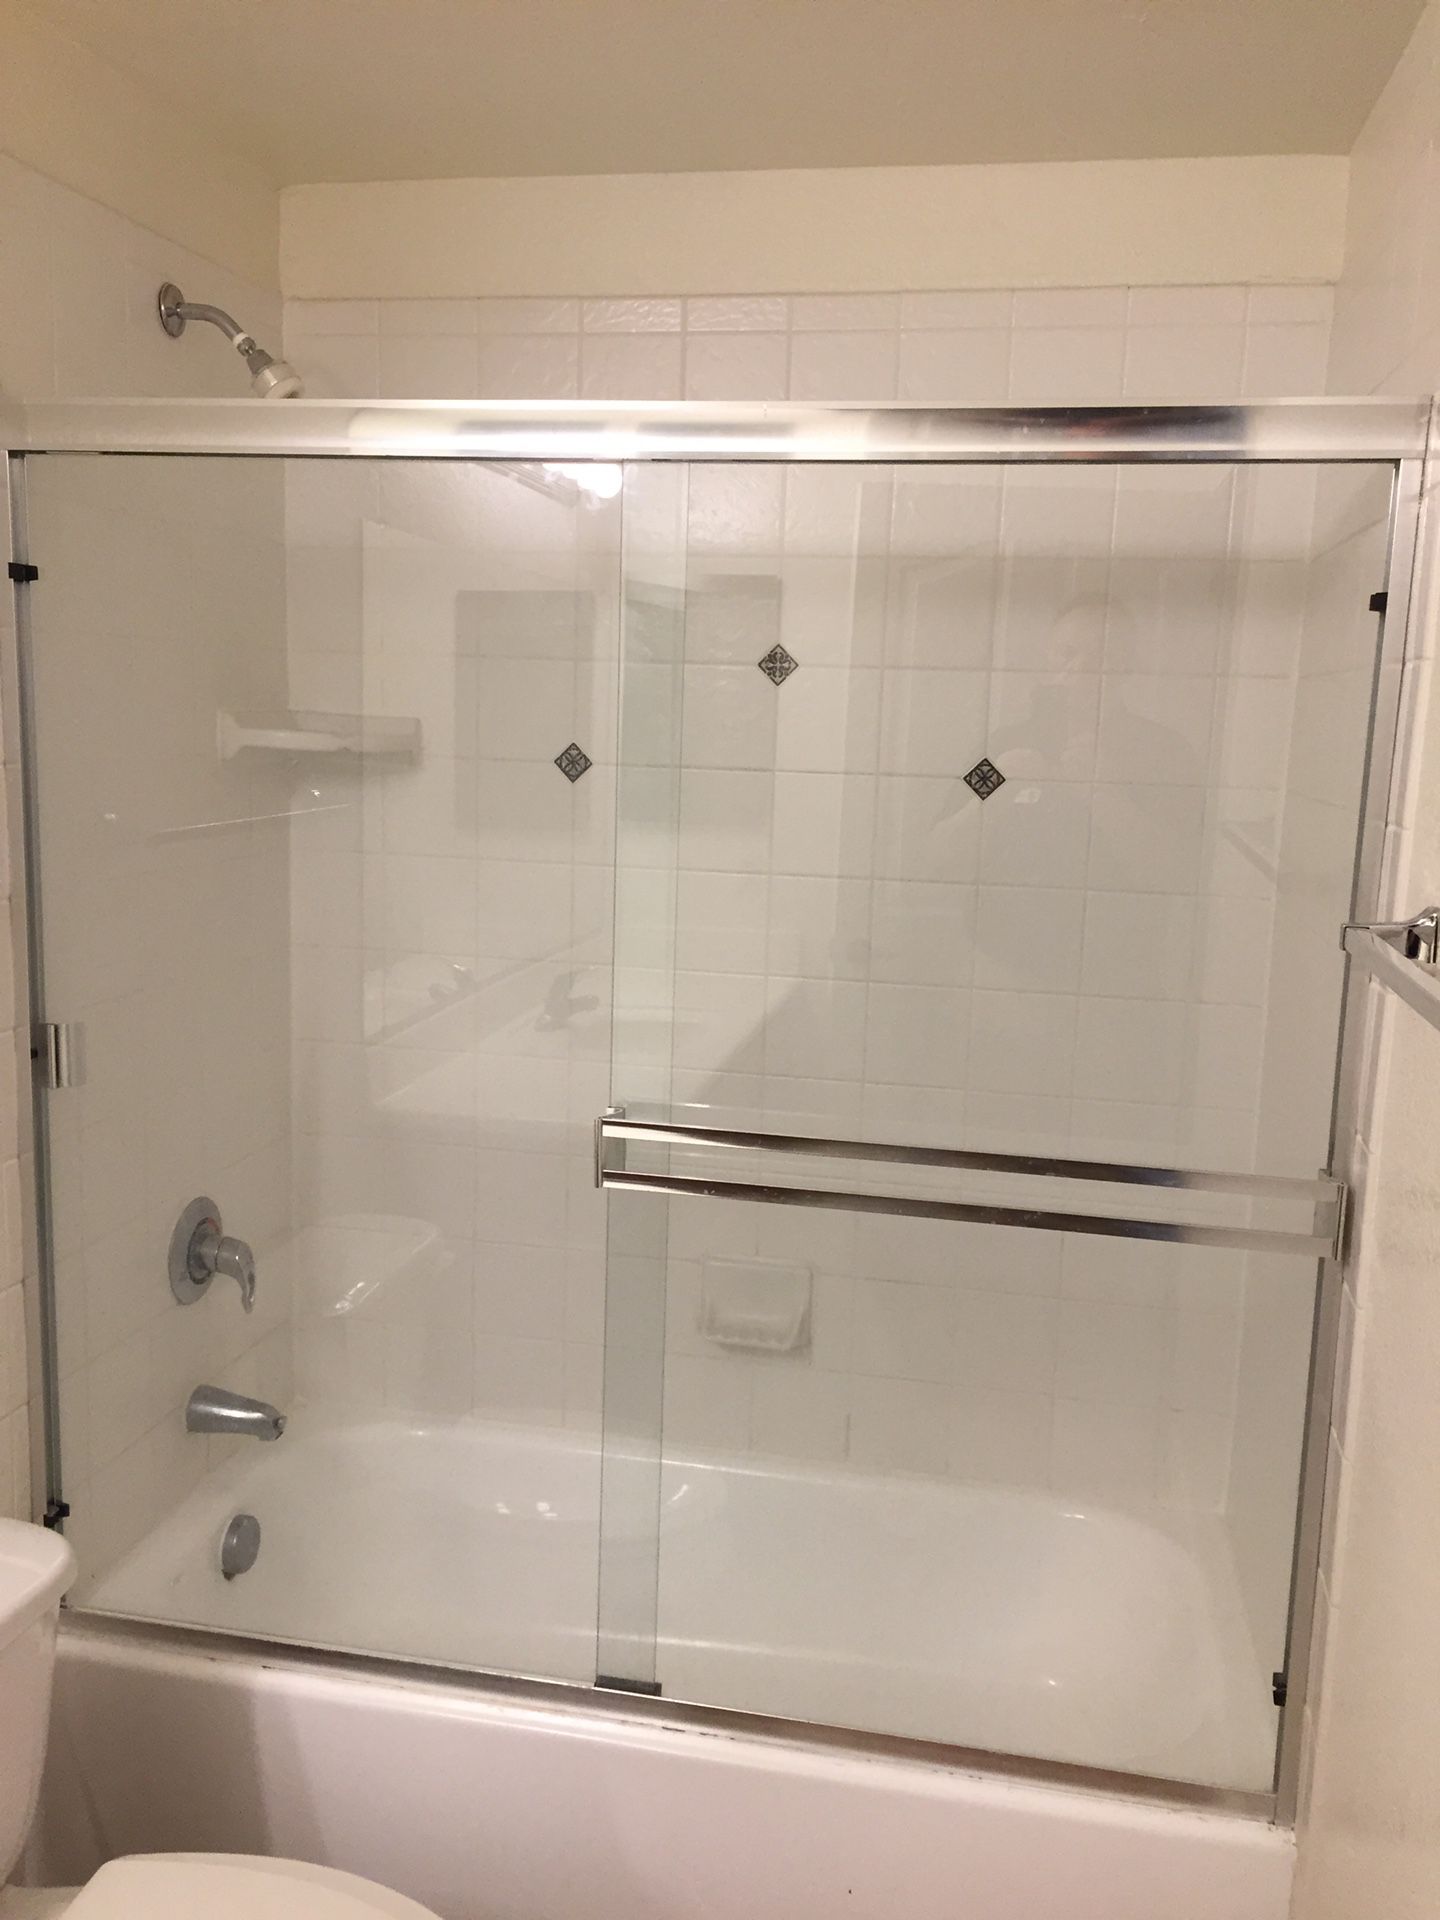 Shower doors 59”